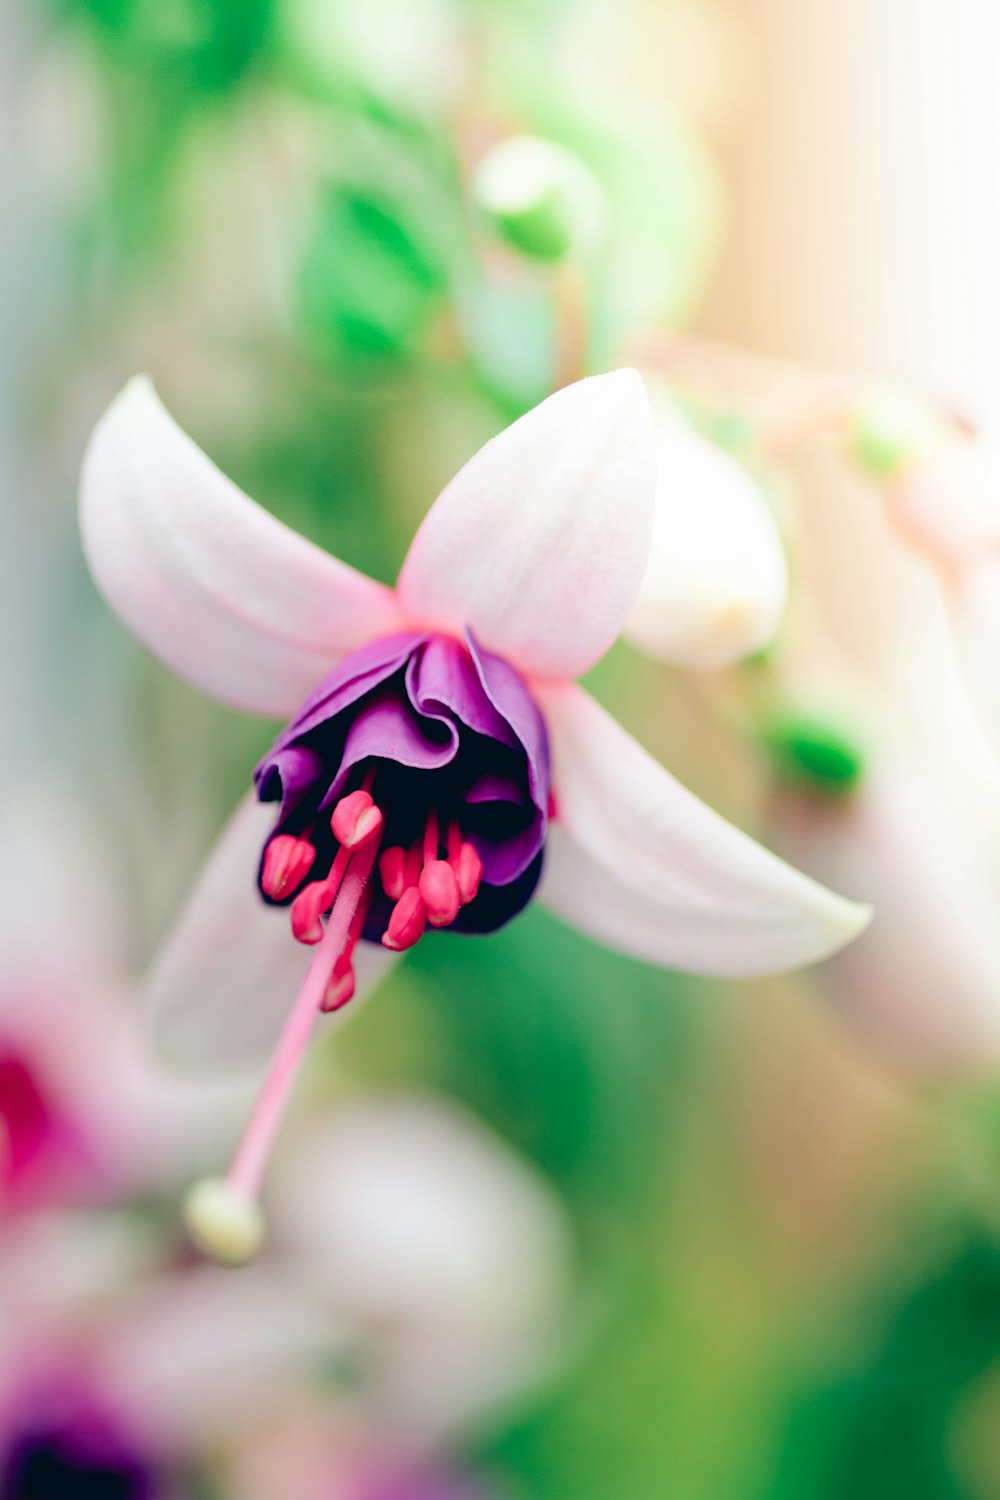 fiore bianco e viola nell'obiettivo decentrabile